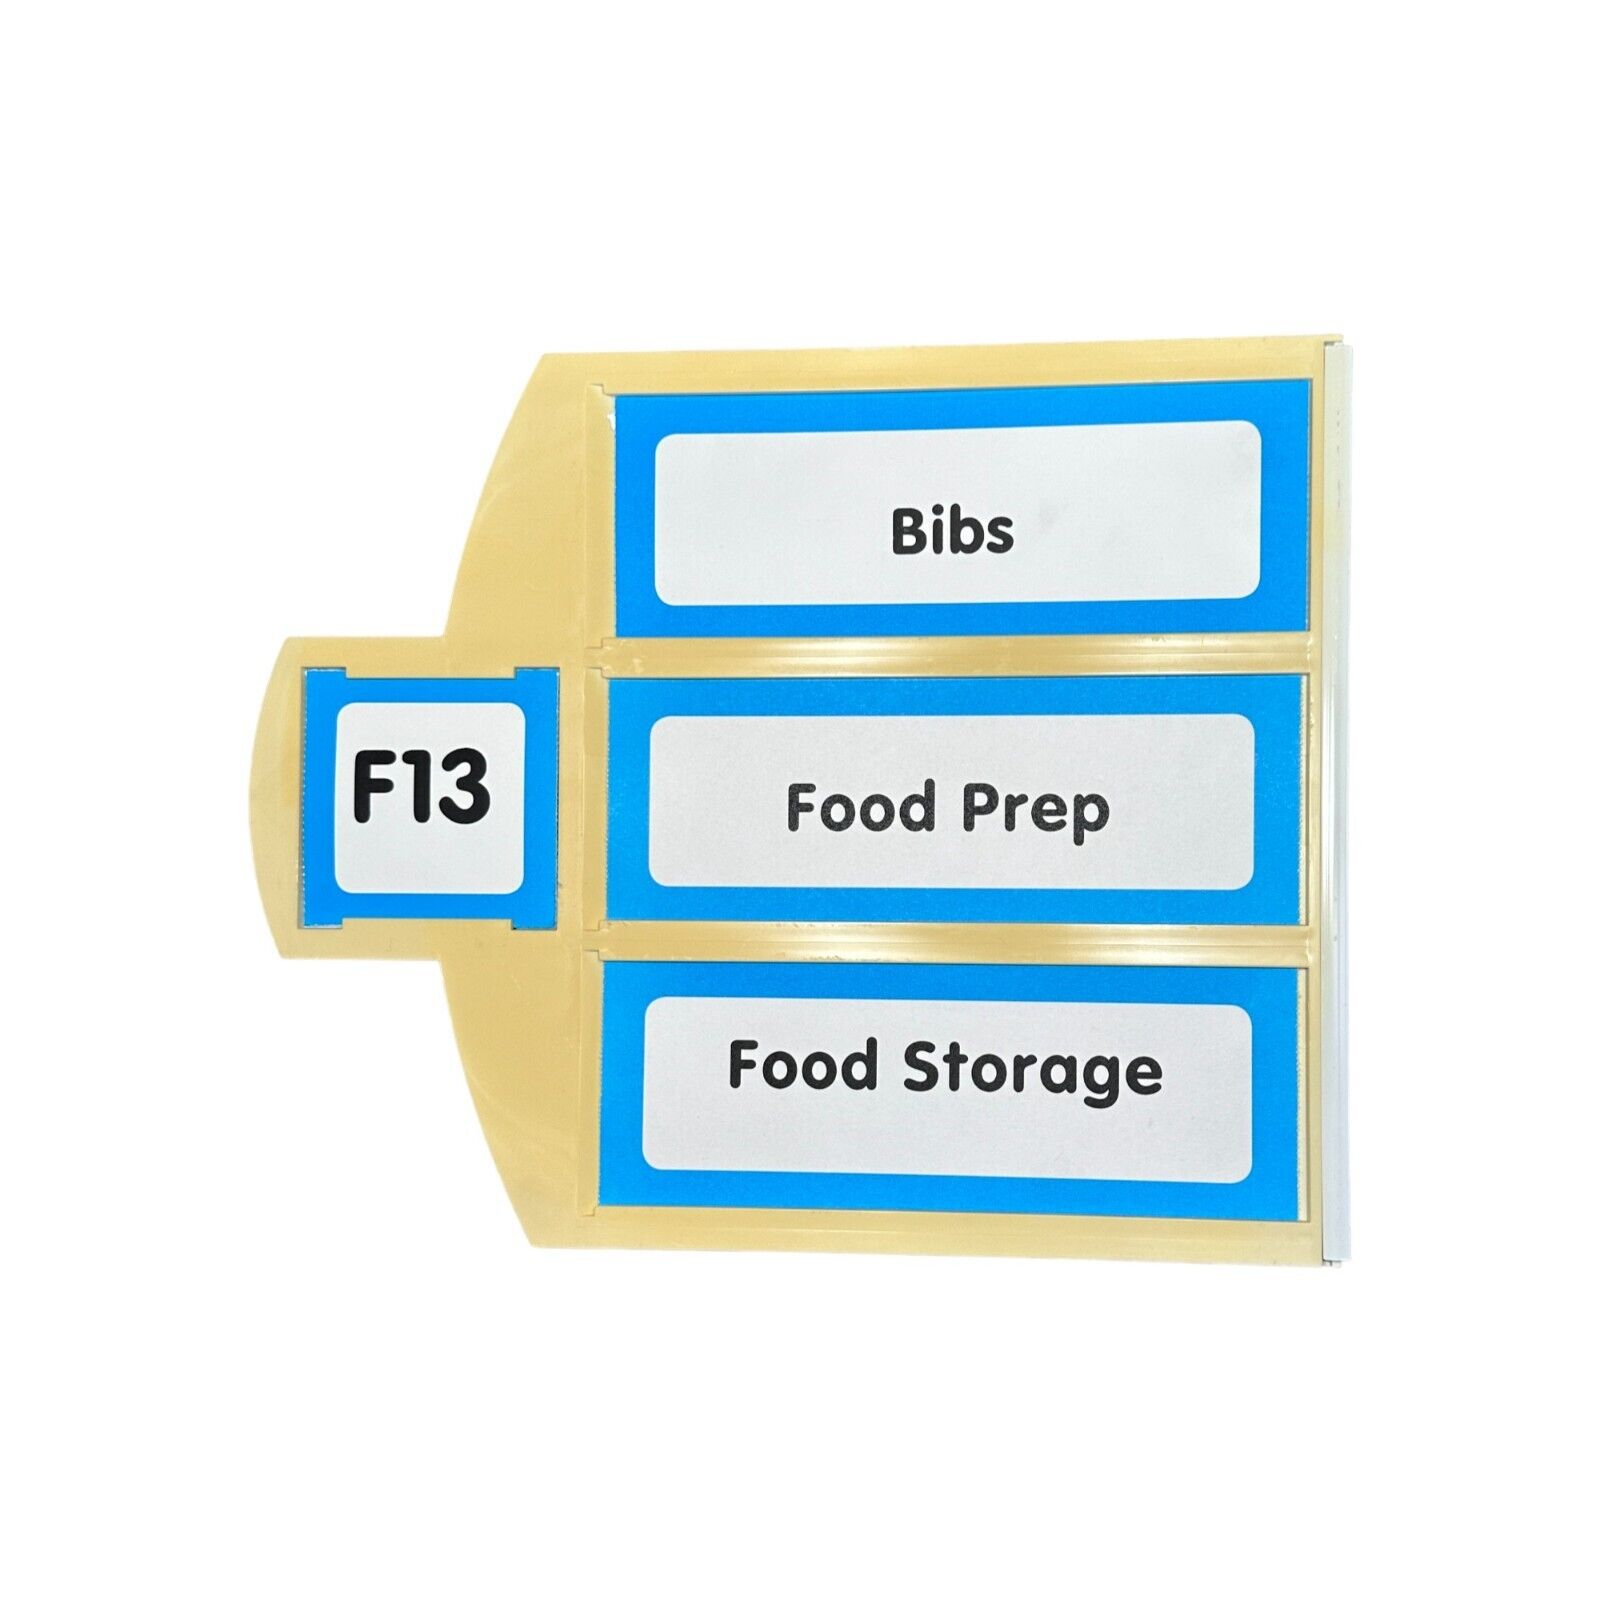 Toys R Us True Aisle Sign F13 Bibs, Food Prep, Food Storage